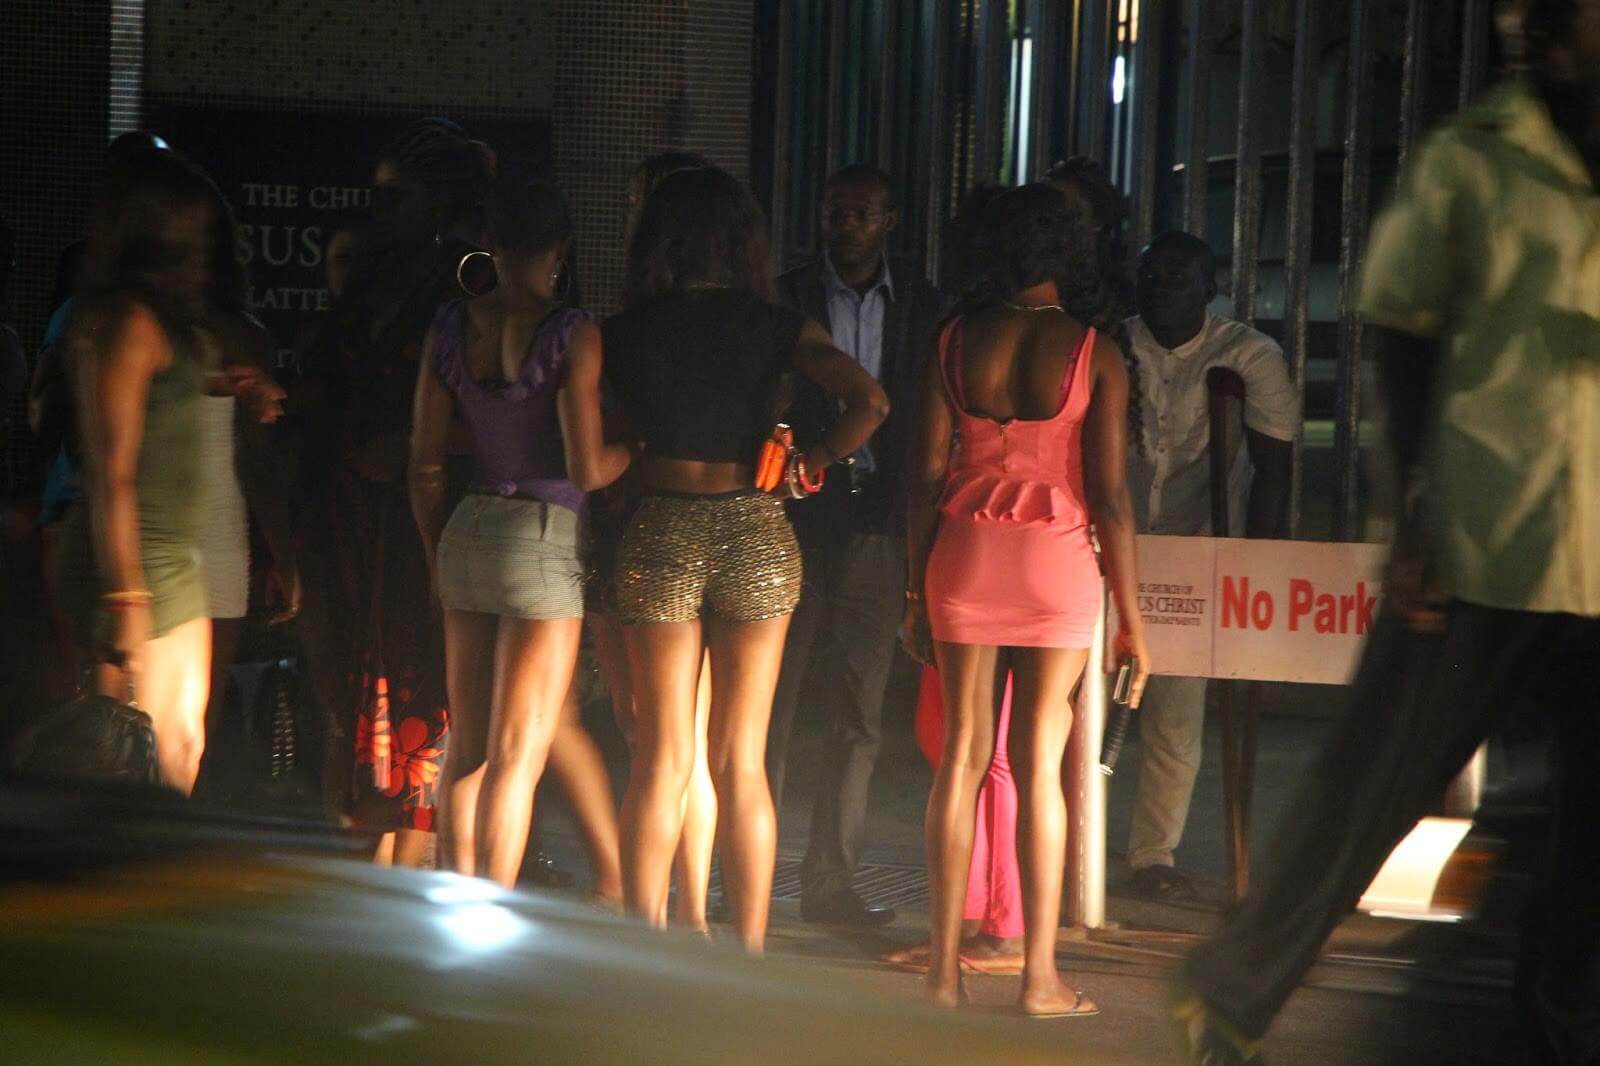  Buy Prostitutes in Cavite City,Philippines